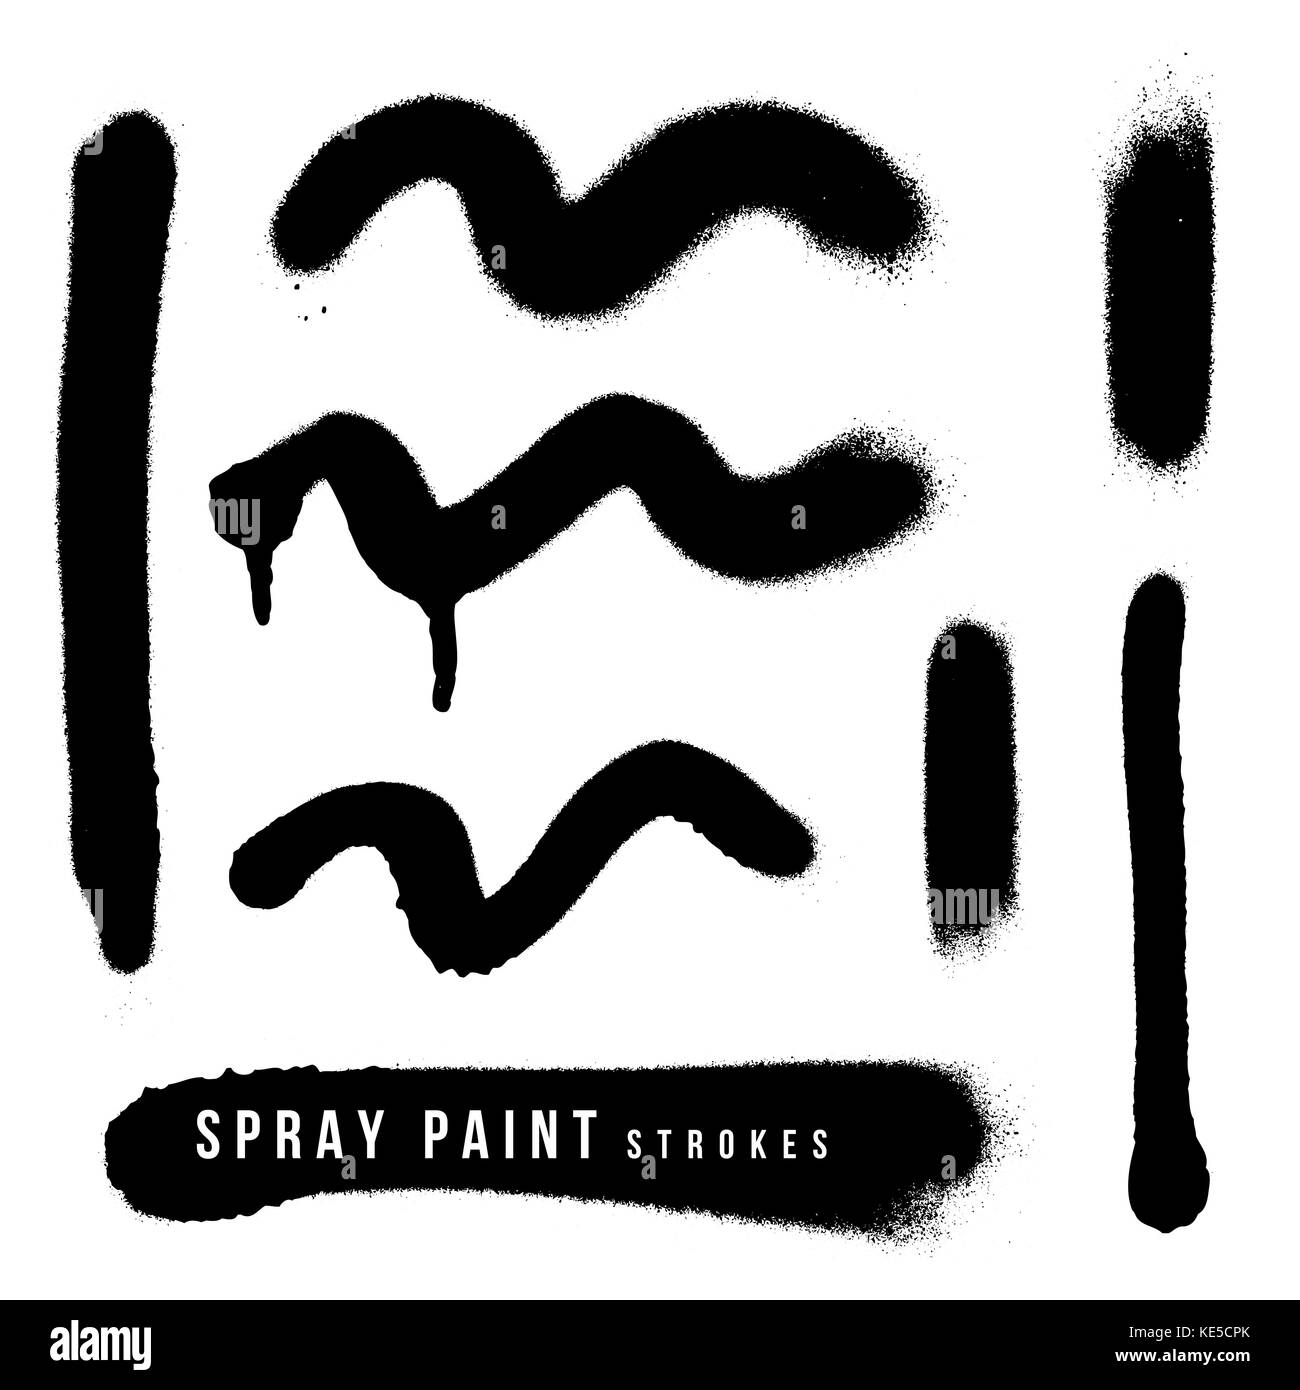 Divers scénarios de pulvérisation de peinture monochrome noir stokes splash jeu de textures réalistes décoratif isolé sur fond blanc Illustration de Vecteur